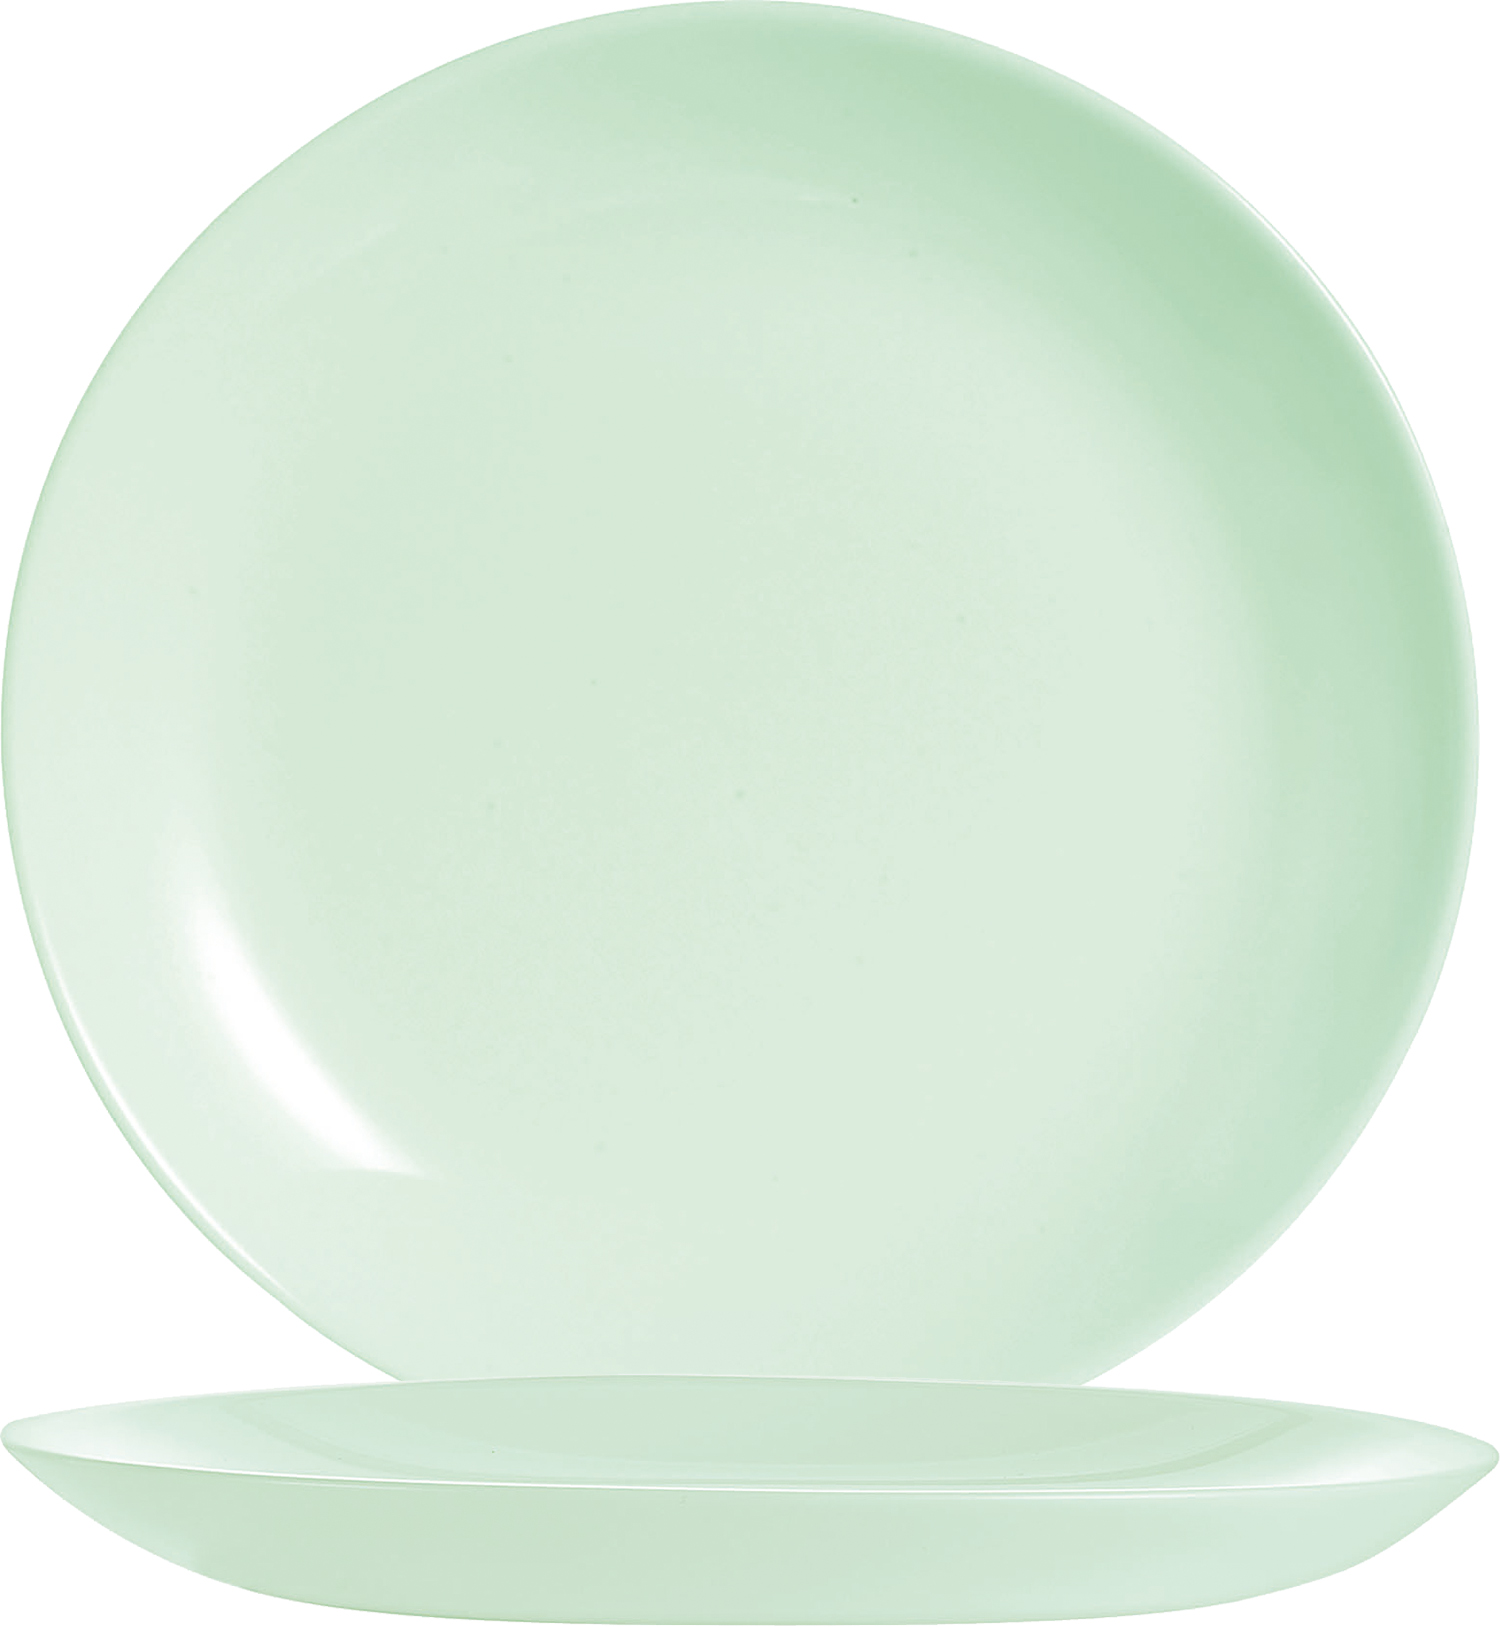 Desserteller DIWALI, Farbe: Paradise green, Durchmesser: 19 cm, Coupteller - ohne breite Fahne Opalglas (gehärtet)